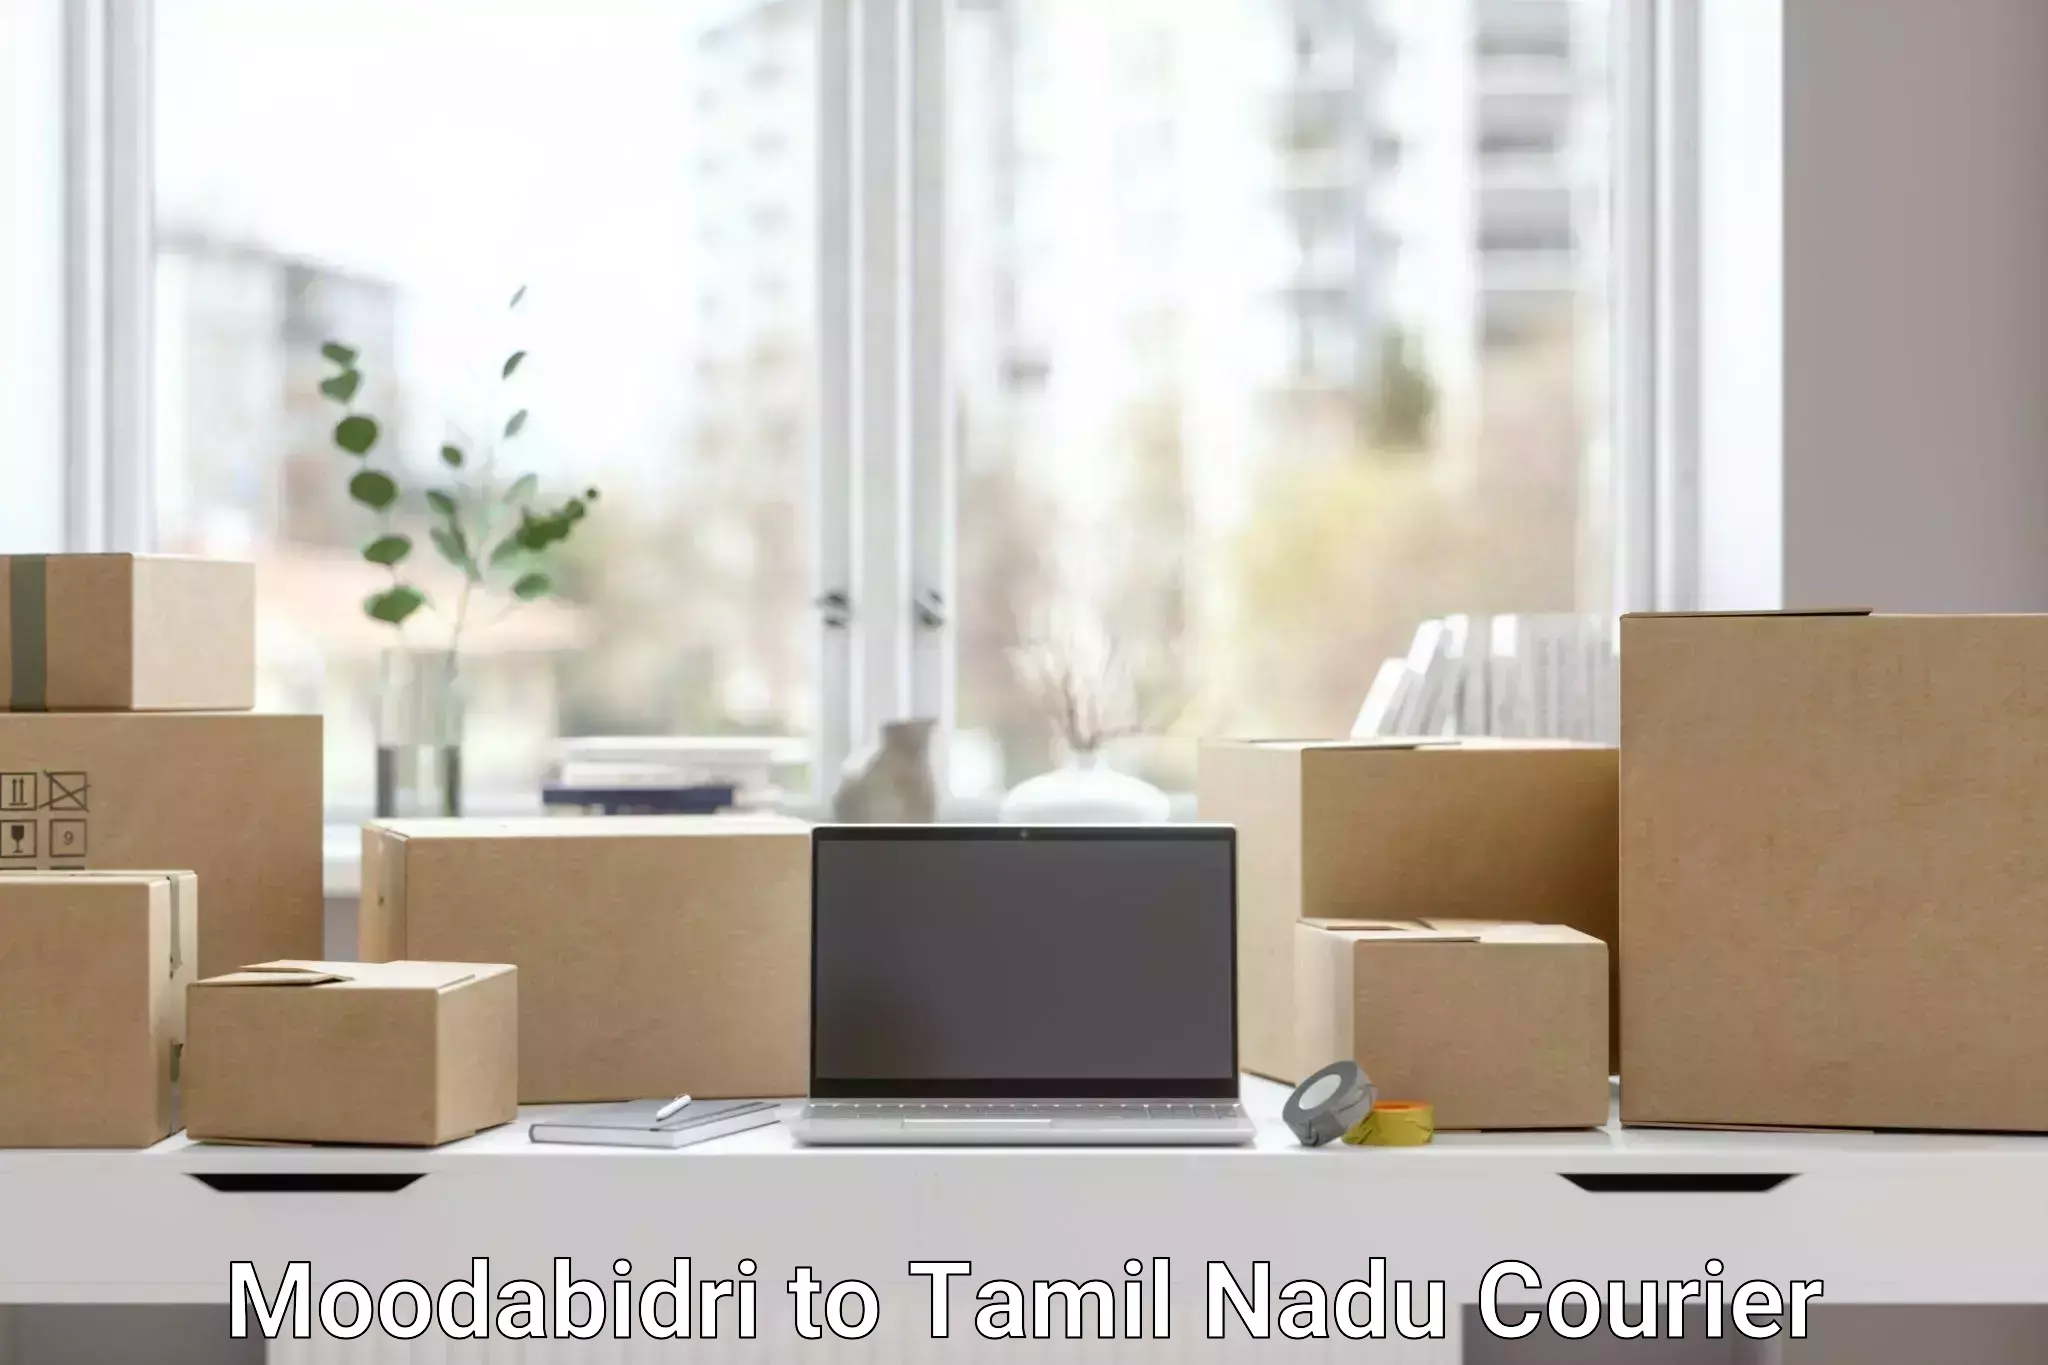 Global shipping networks Moodabidri to Tirupattur